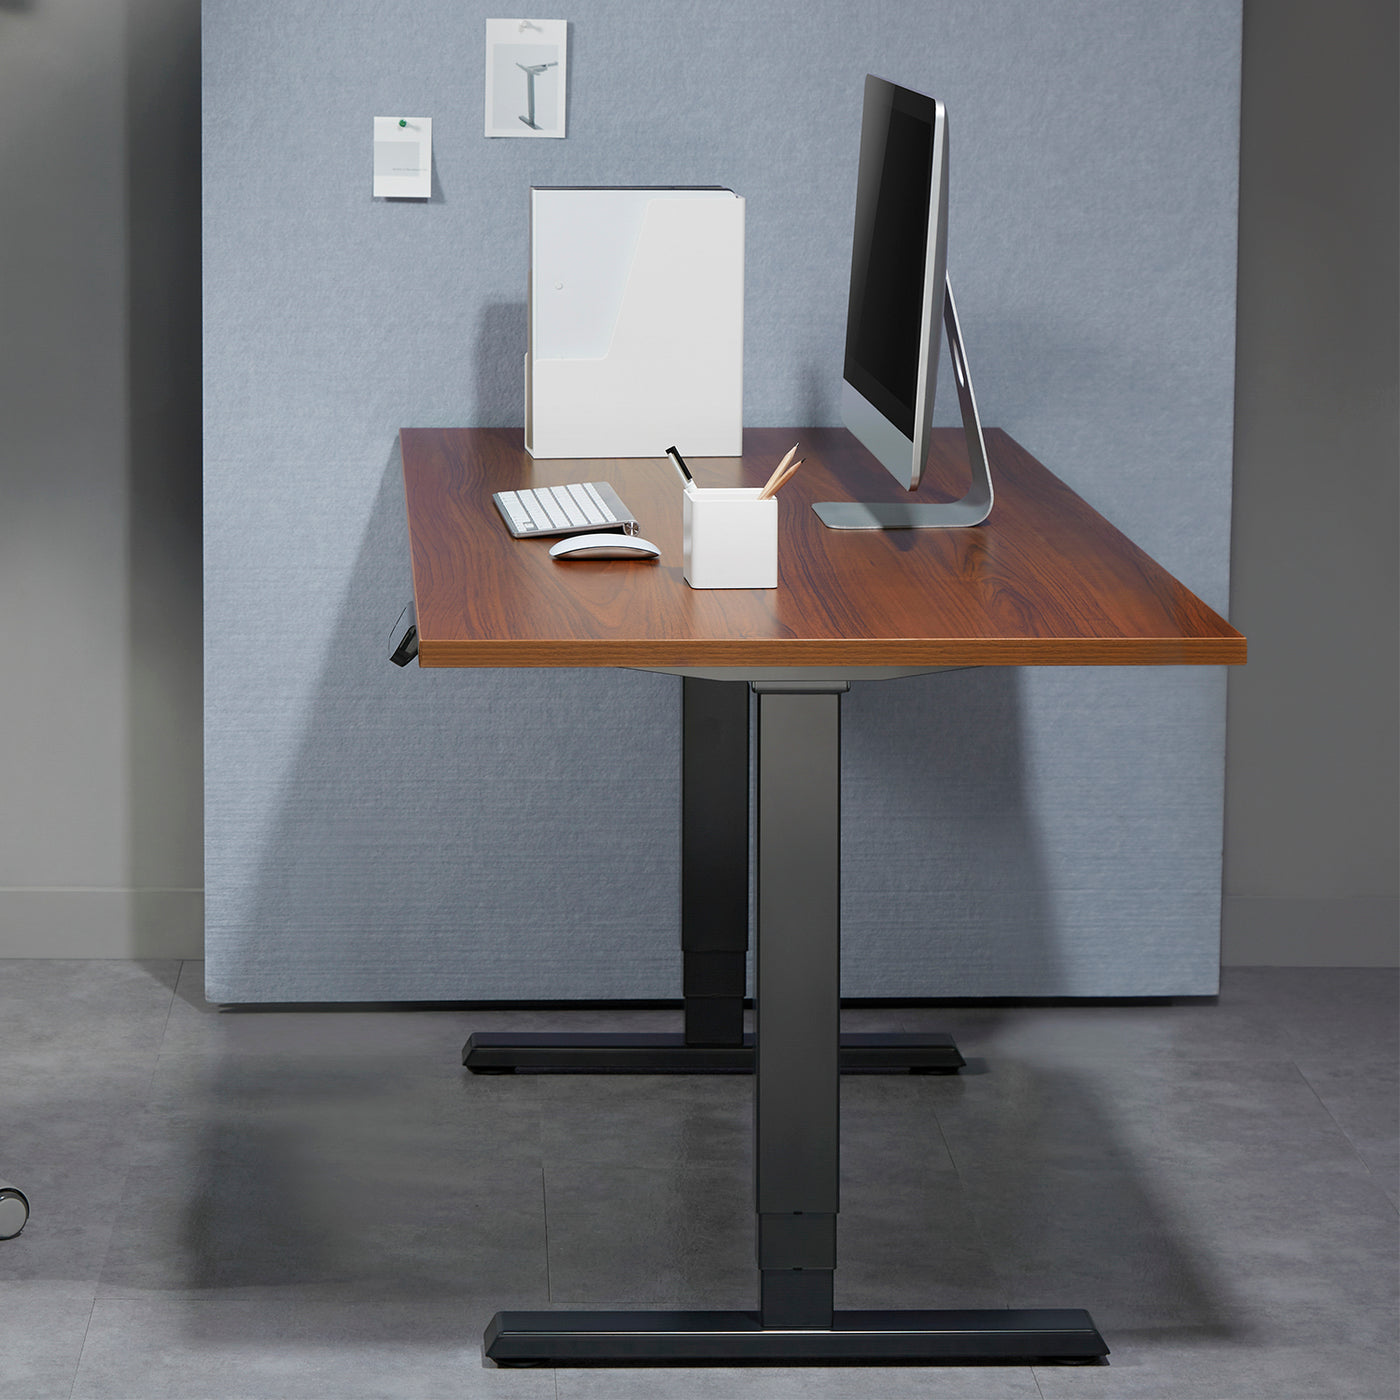 Mesa elétrica Ergo Office sem tampo, para trabalhar em pé ou sentado, máx. 125kg, altura máxima 1280mm, painel táctil, ER-422